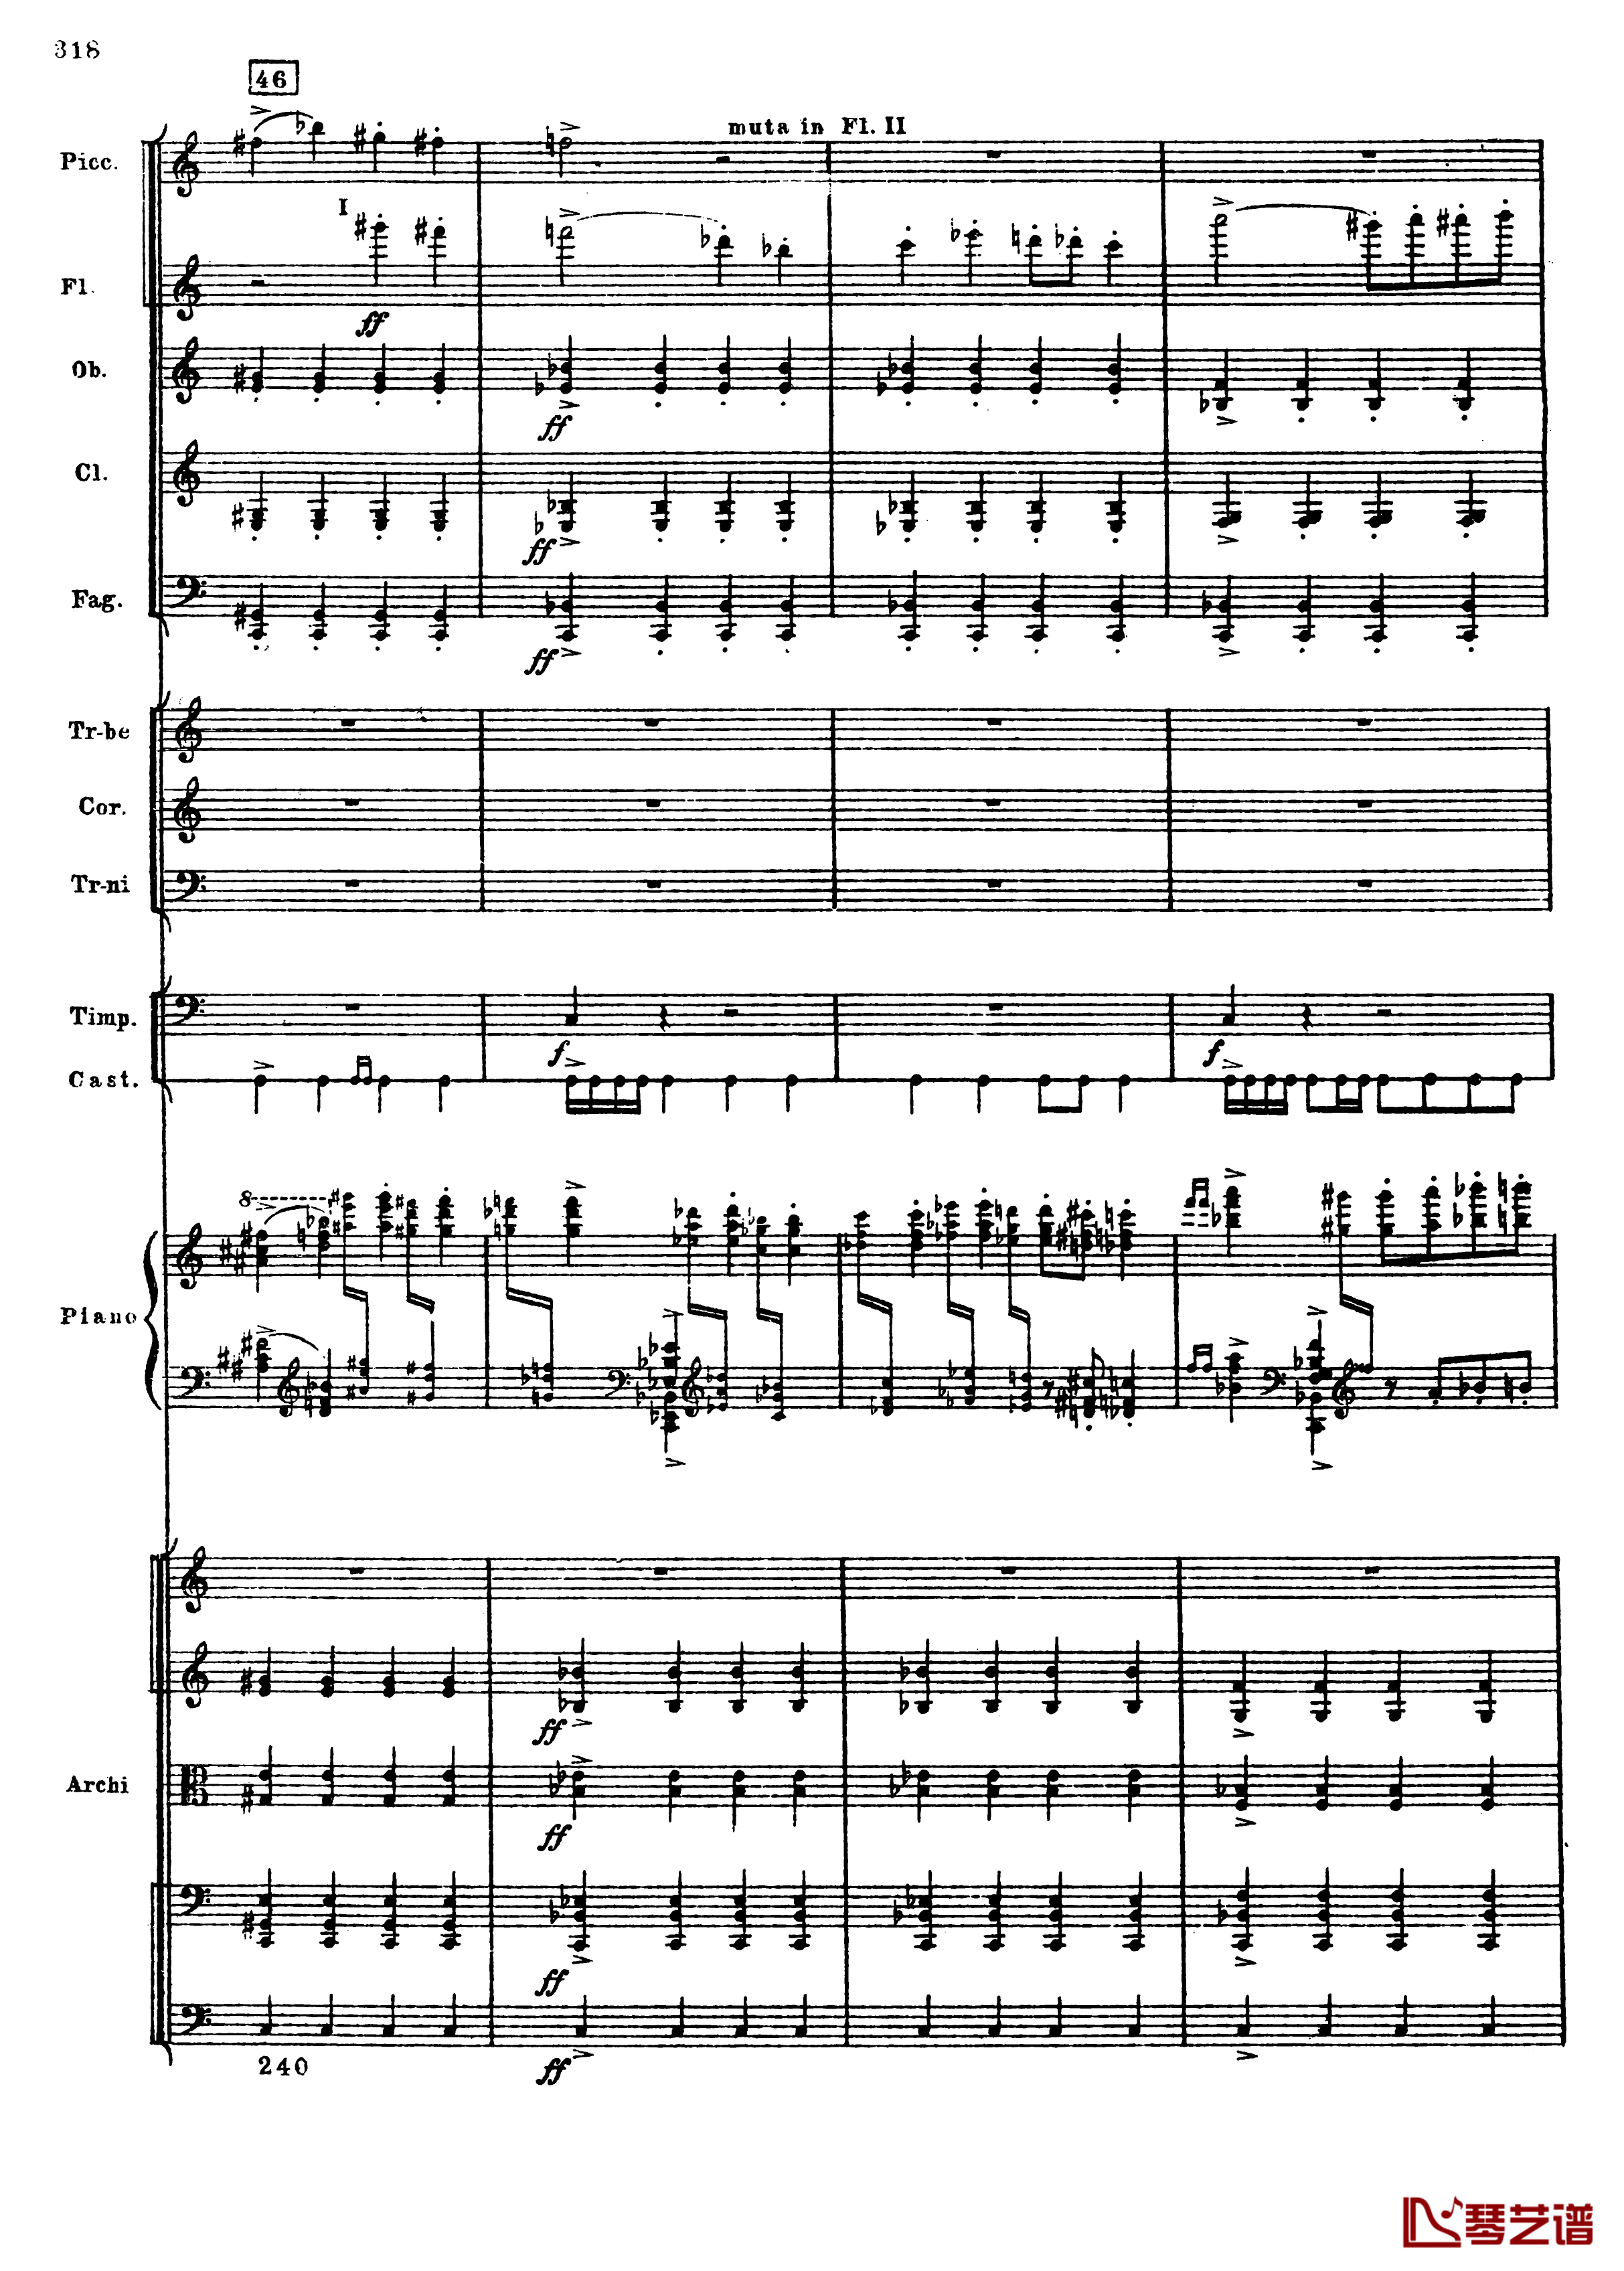 普罗科菲耶夫第三钢琴协奏曲钢琴谱-总谱-普罗科非耶夫50